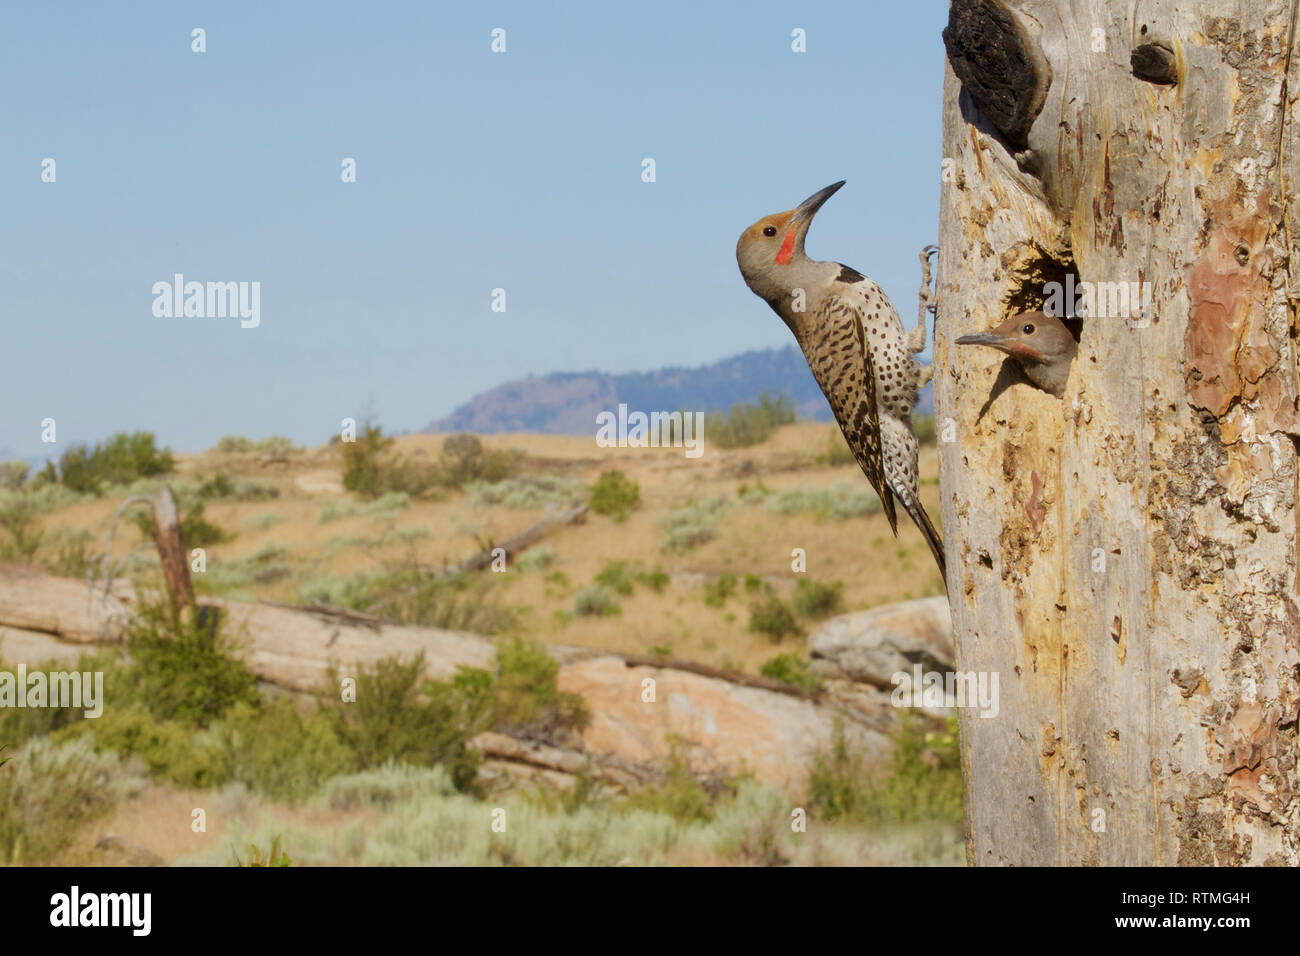 Adulto sfarfallio del Nord assiste ai suoi giovani al nido tree - il scabland sagebrush habitat è presentato in questo ritratto ambientale Foto Stock